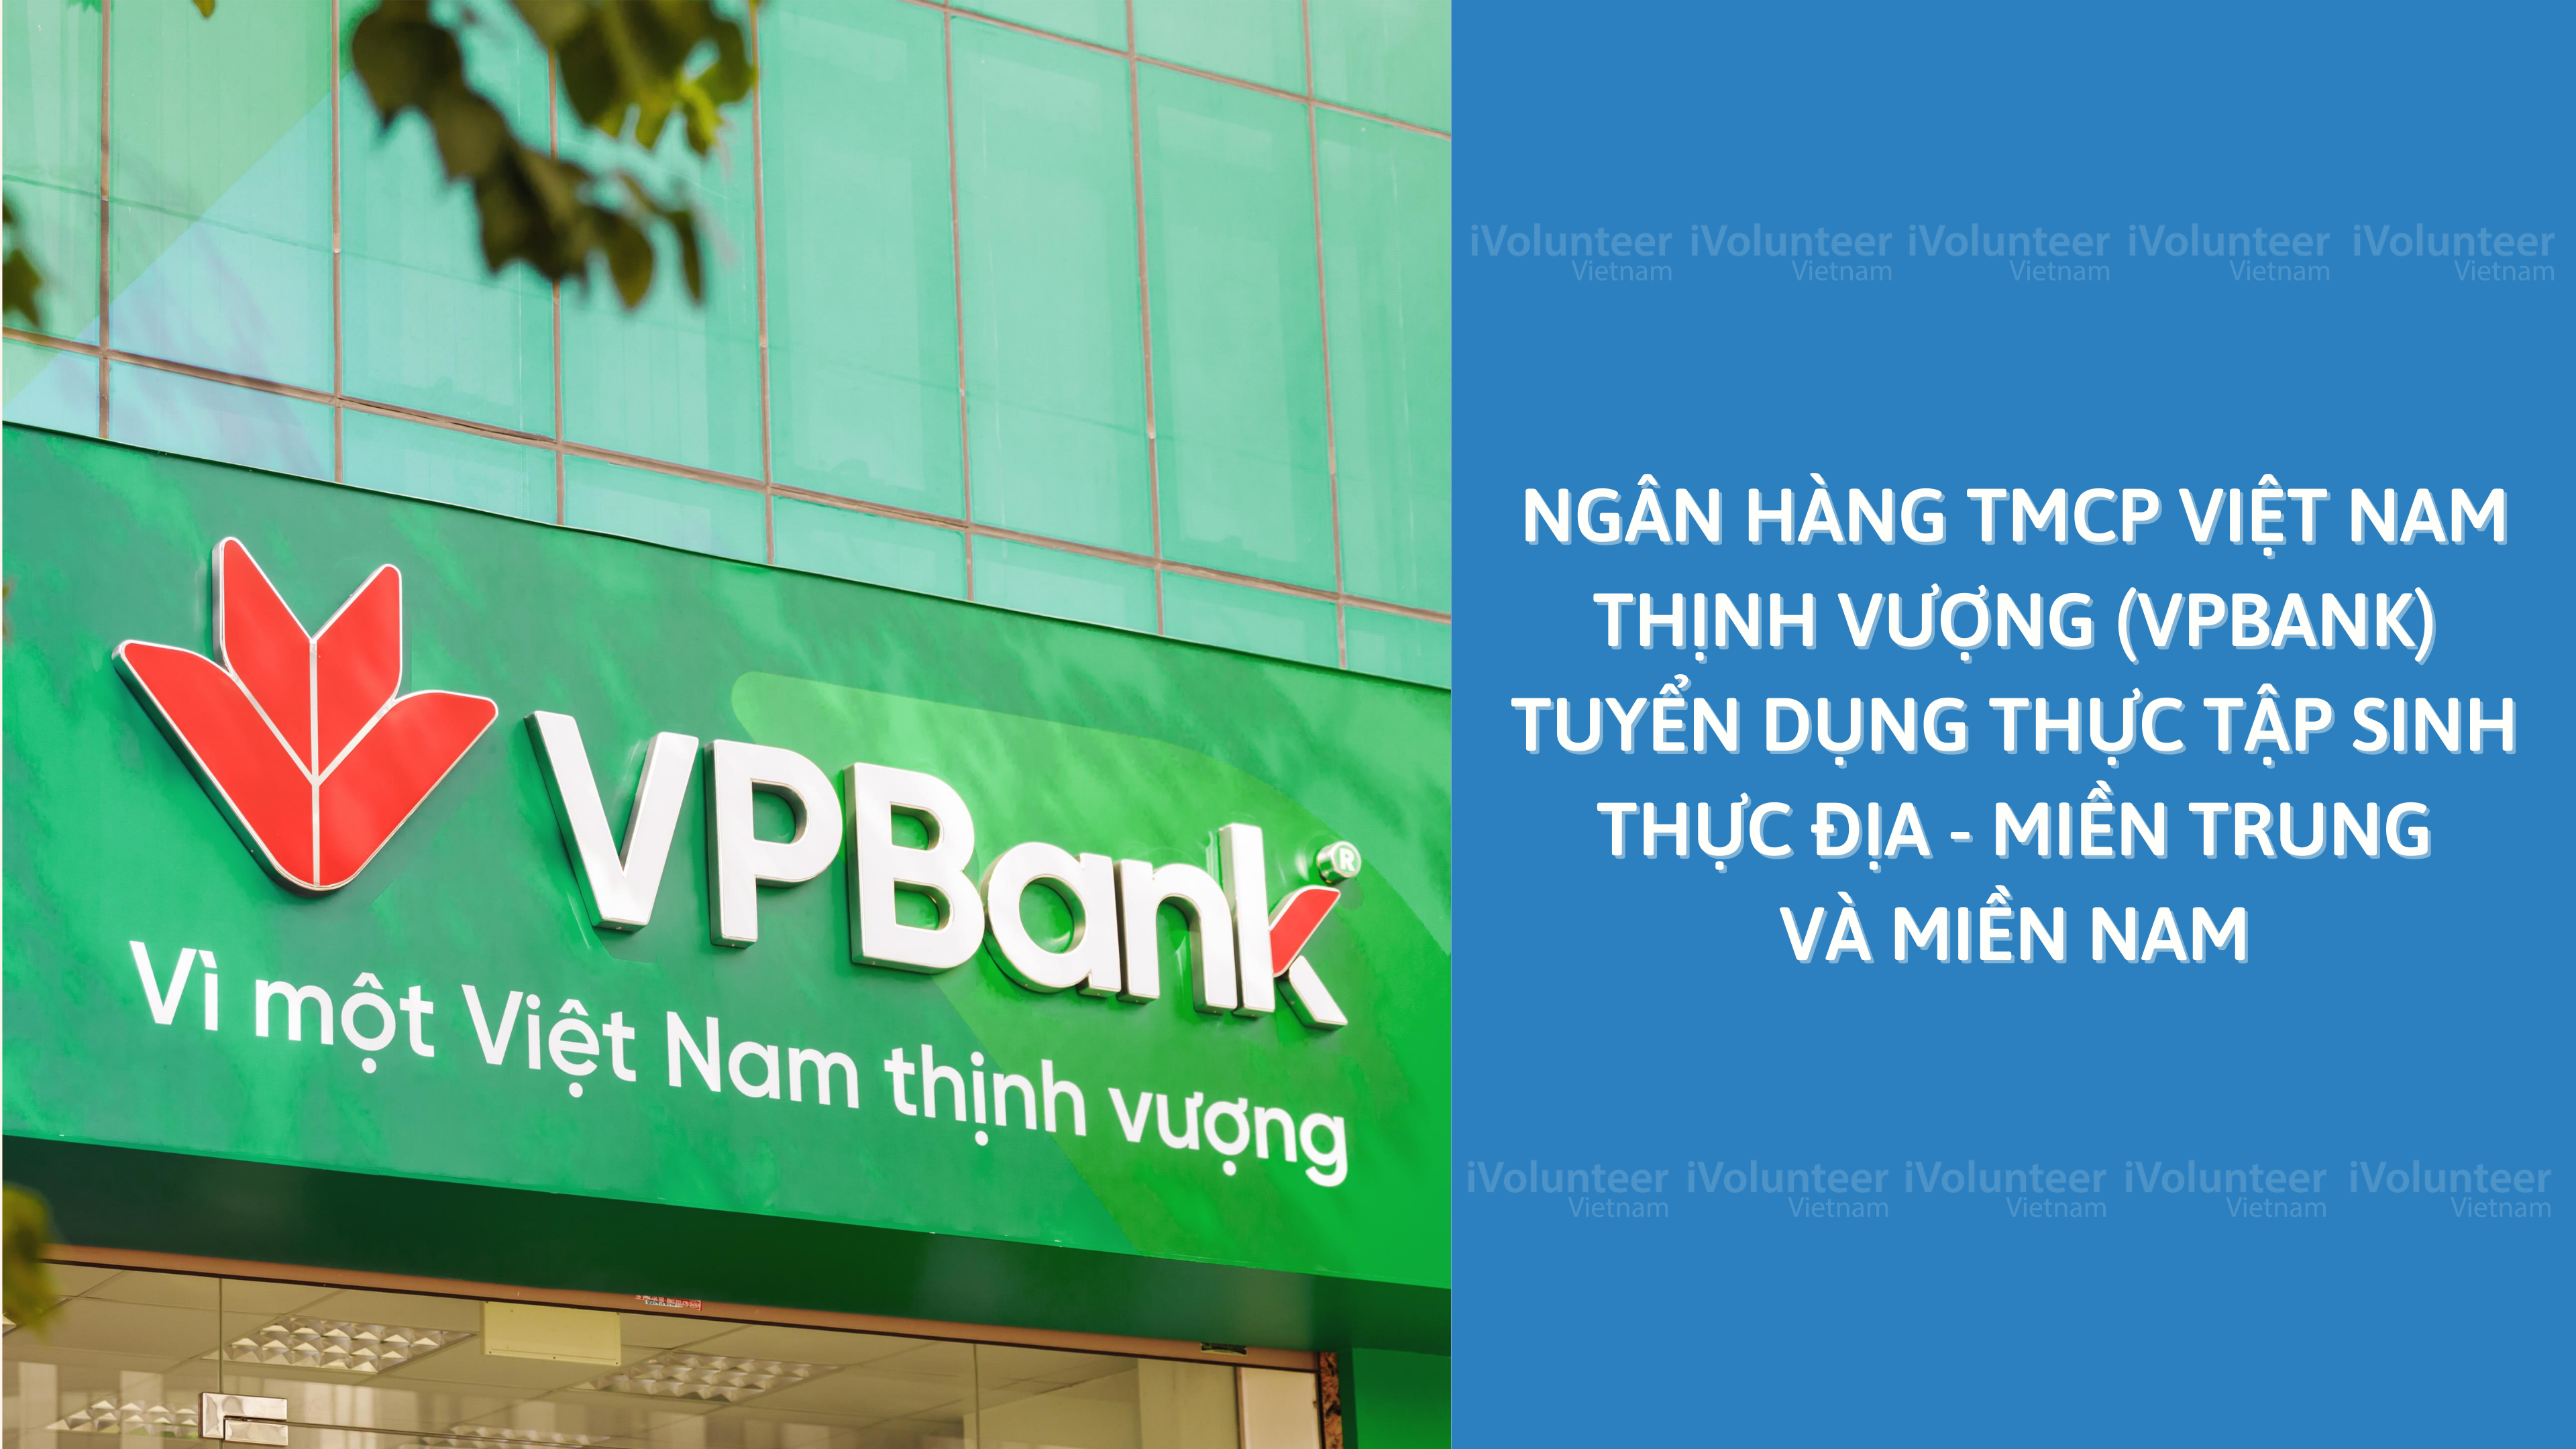 Ngân Hàng TMCP Việt Nam Thịnh Vượng (VPBANK) Tuyển Dụng Thực Tập Sinh Thực Địa - Miền Trung Và Miền Nam